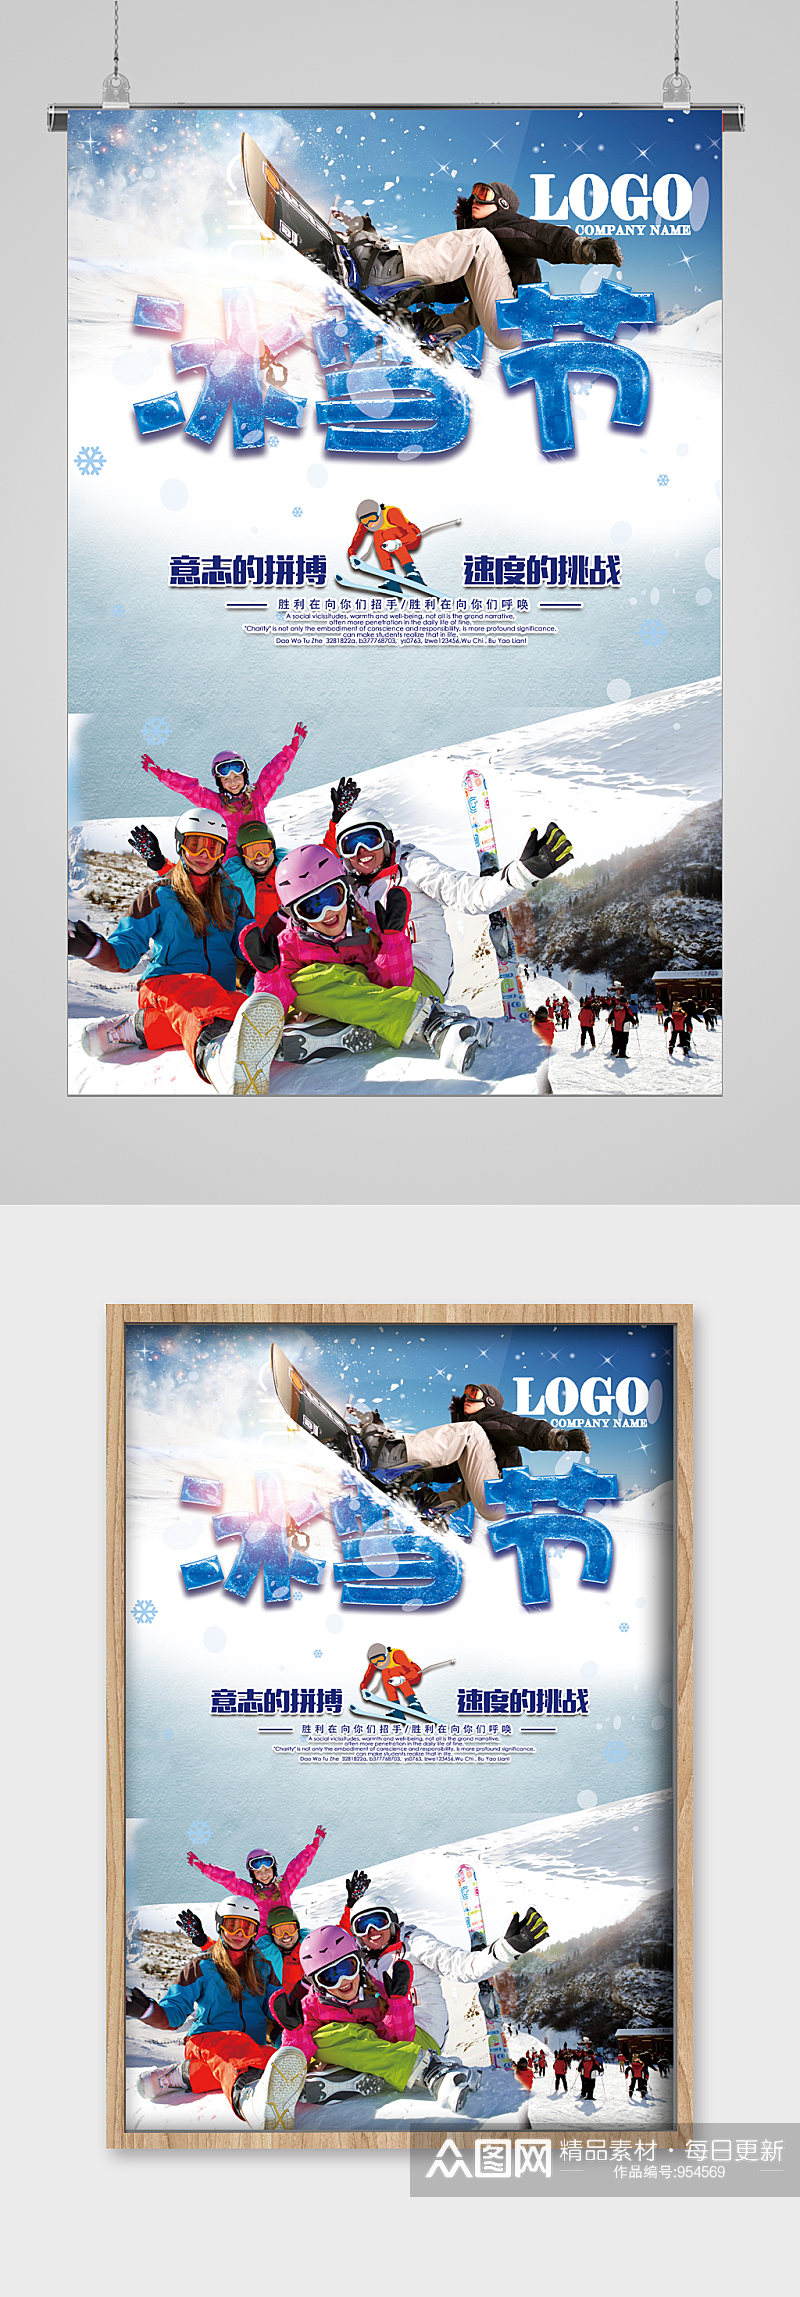 冬季滑雪哈尔滨冰雪节宣传海报素材